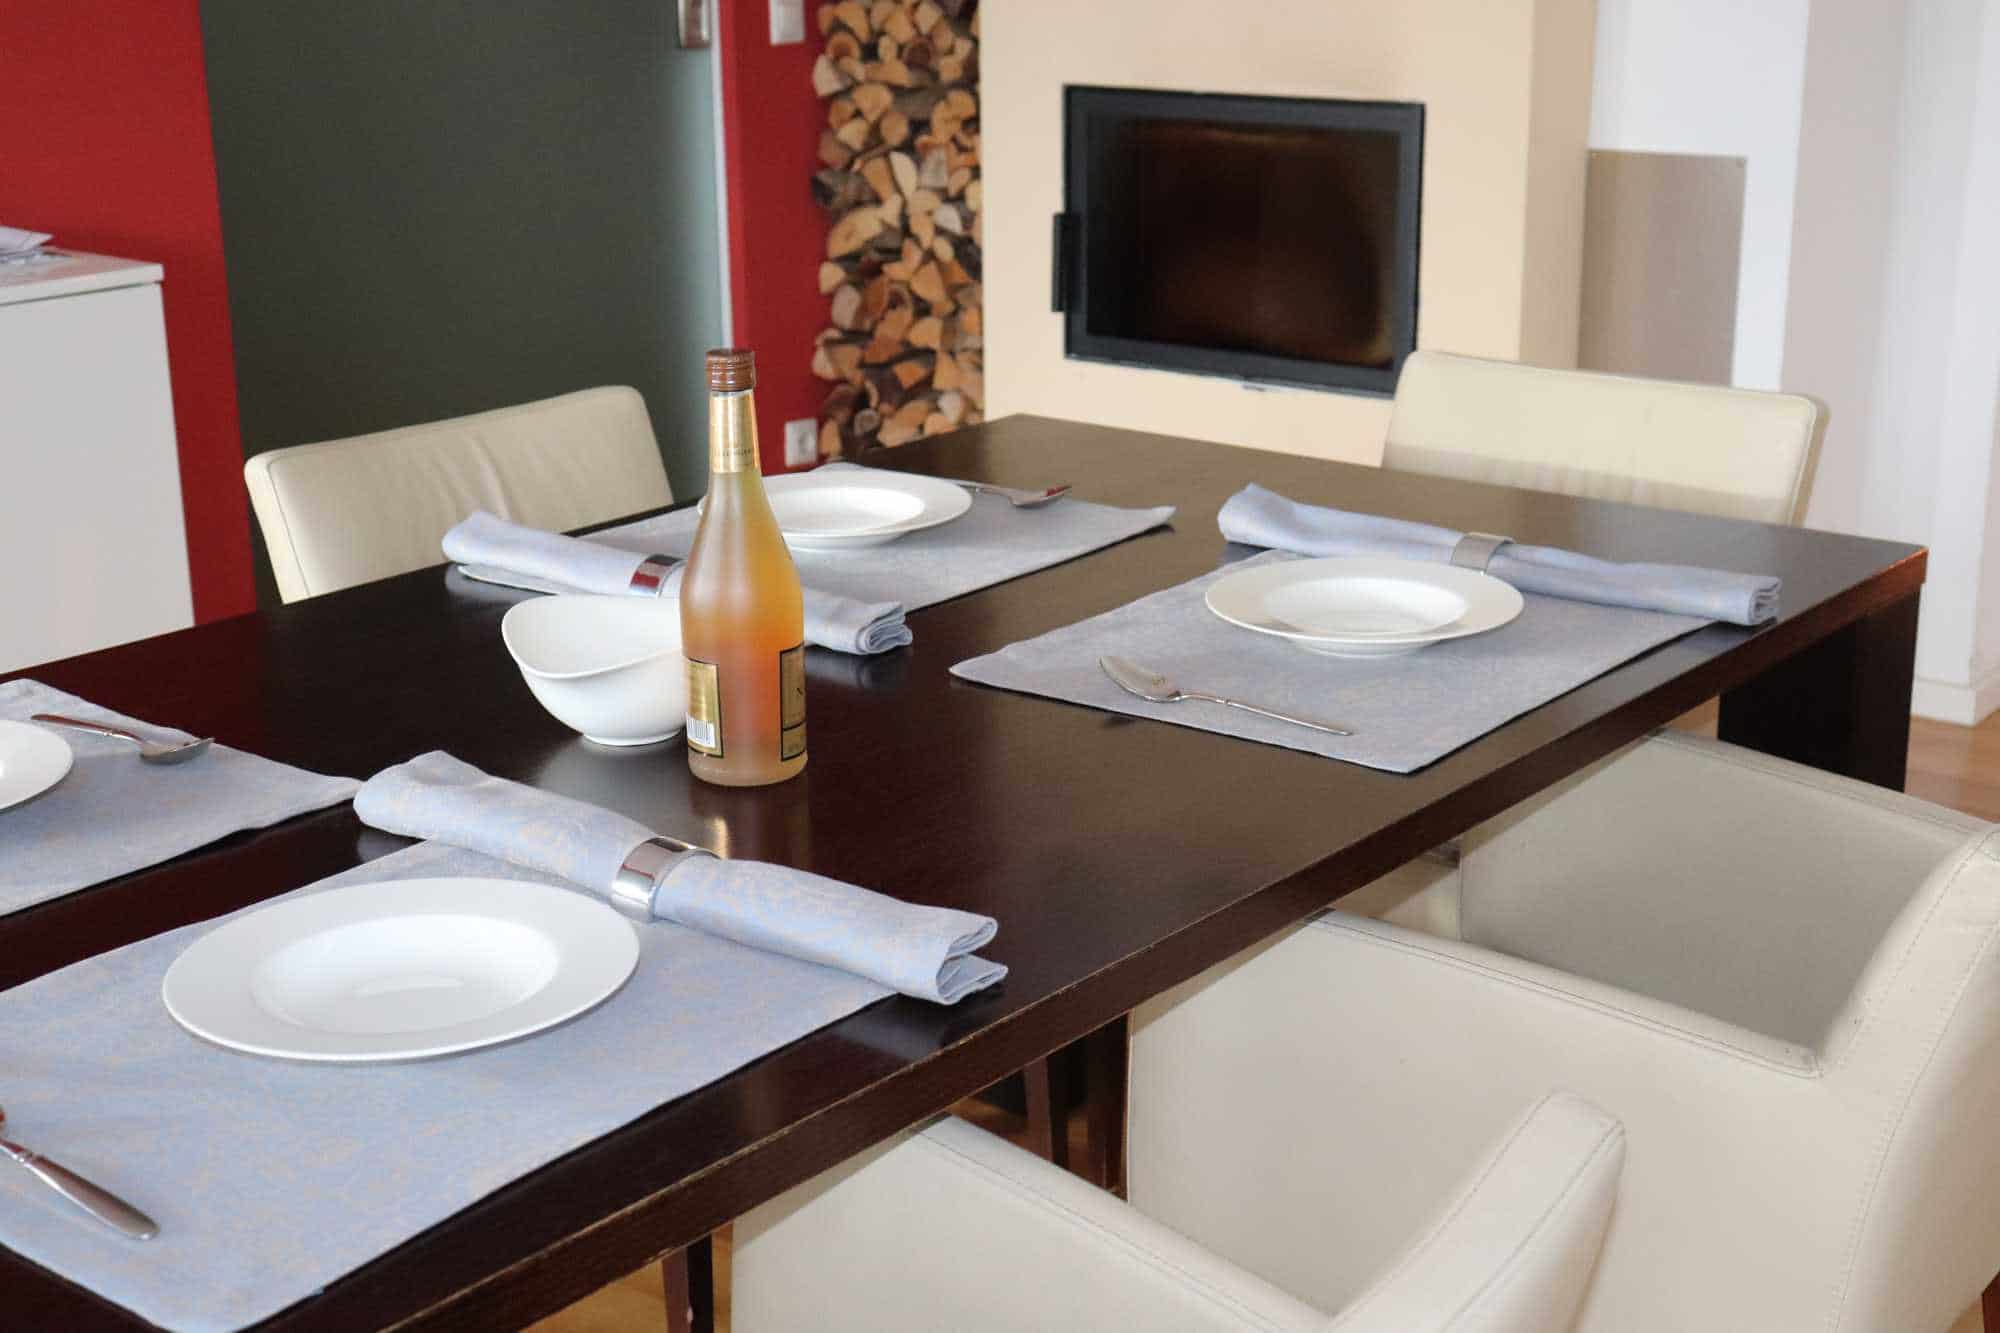 Tischsets aus Halbleinen mit 3cm Kuvertsaum-Design 35 Fresco-Farbe Azzurro